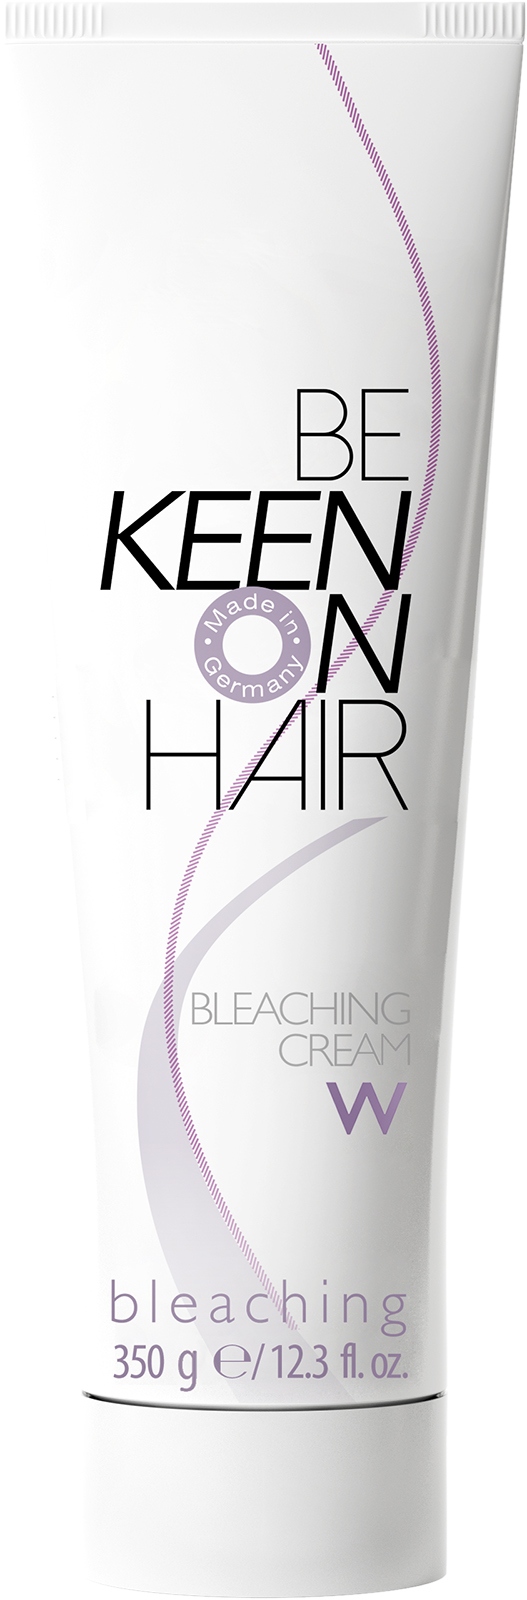 Осветлители для волос:  KEEN -  Крем для обесцвечивания волоc BLEACHING CREAM WHITE (350 мл)